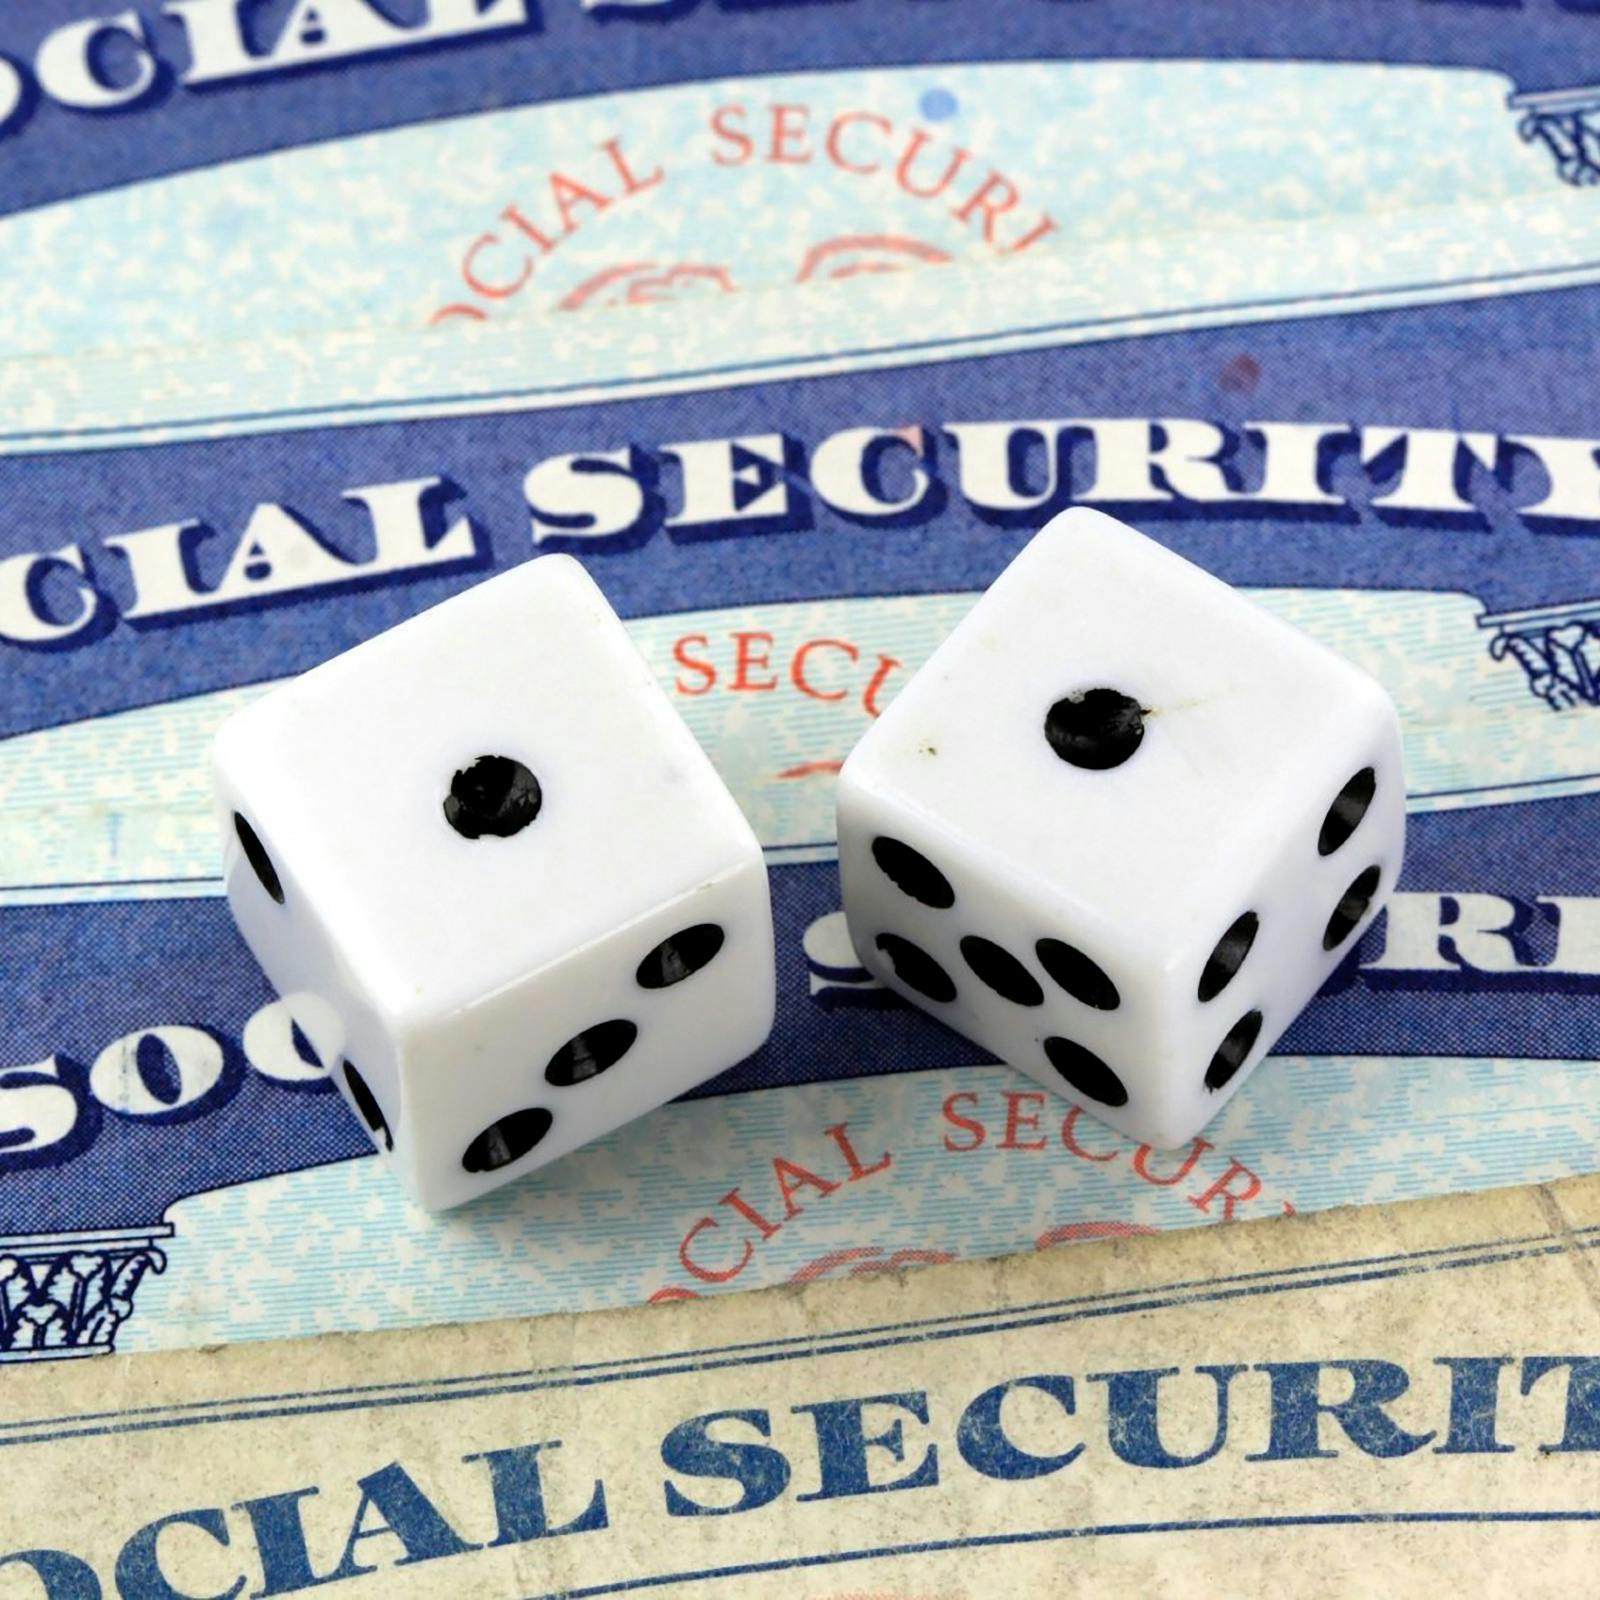 4/17/24: The Social Security Debate Has Officially Begun